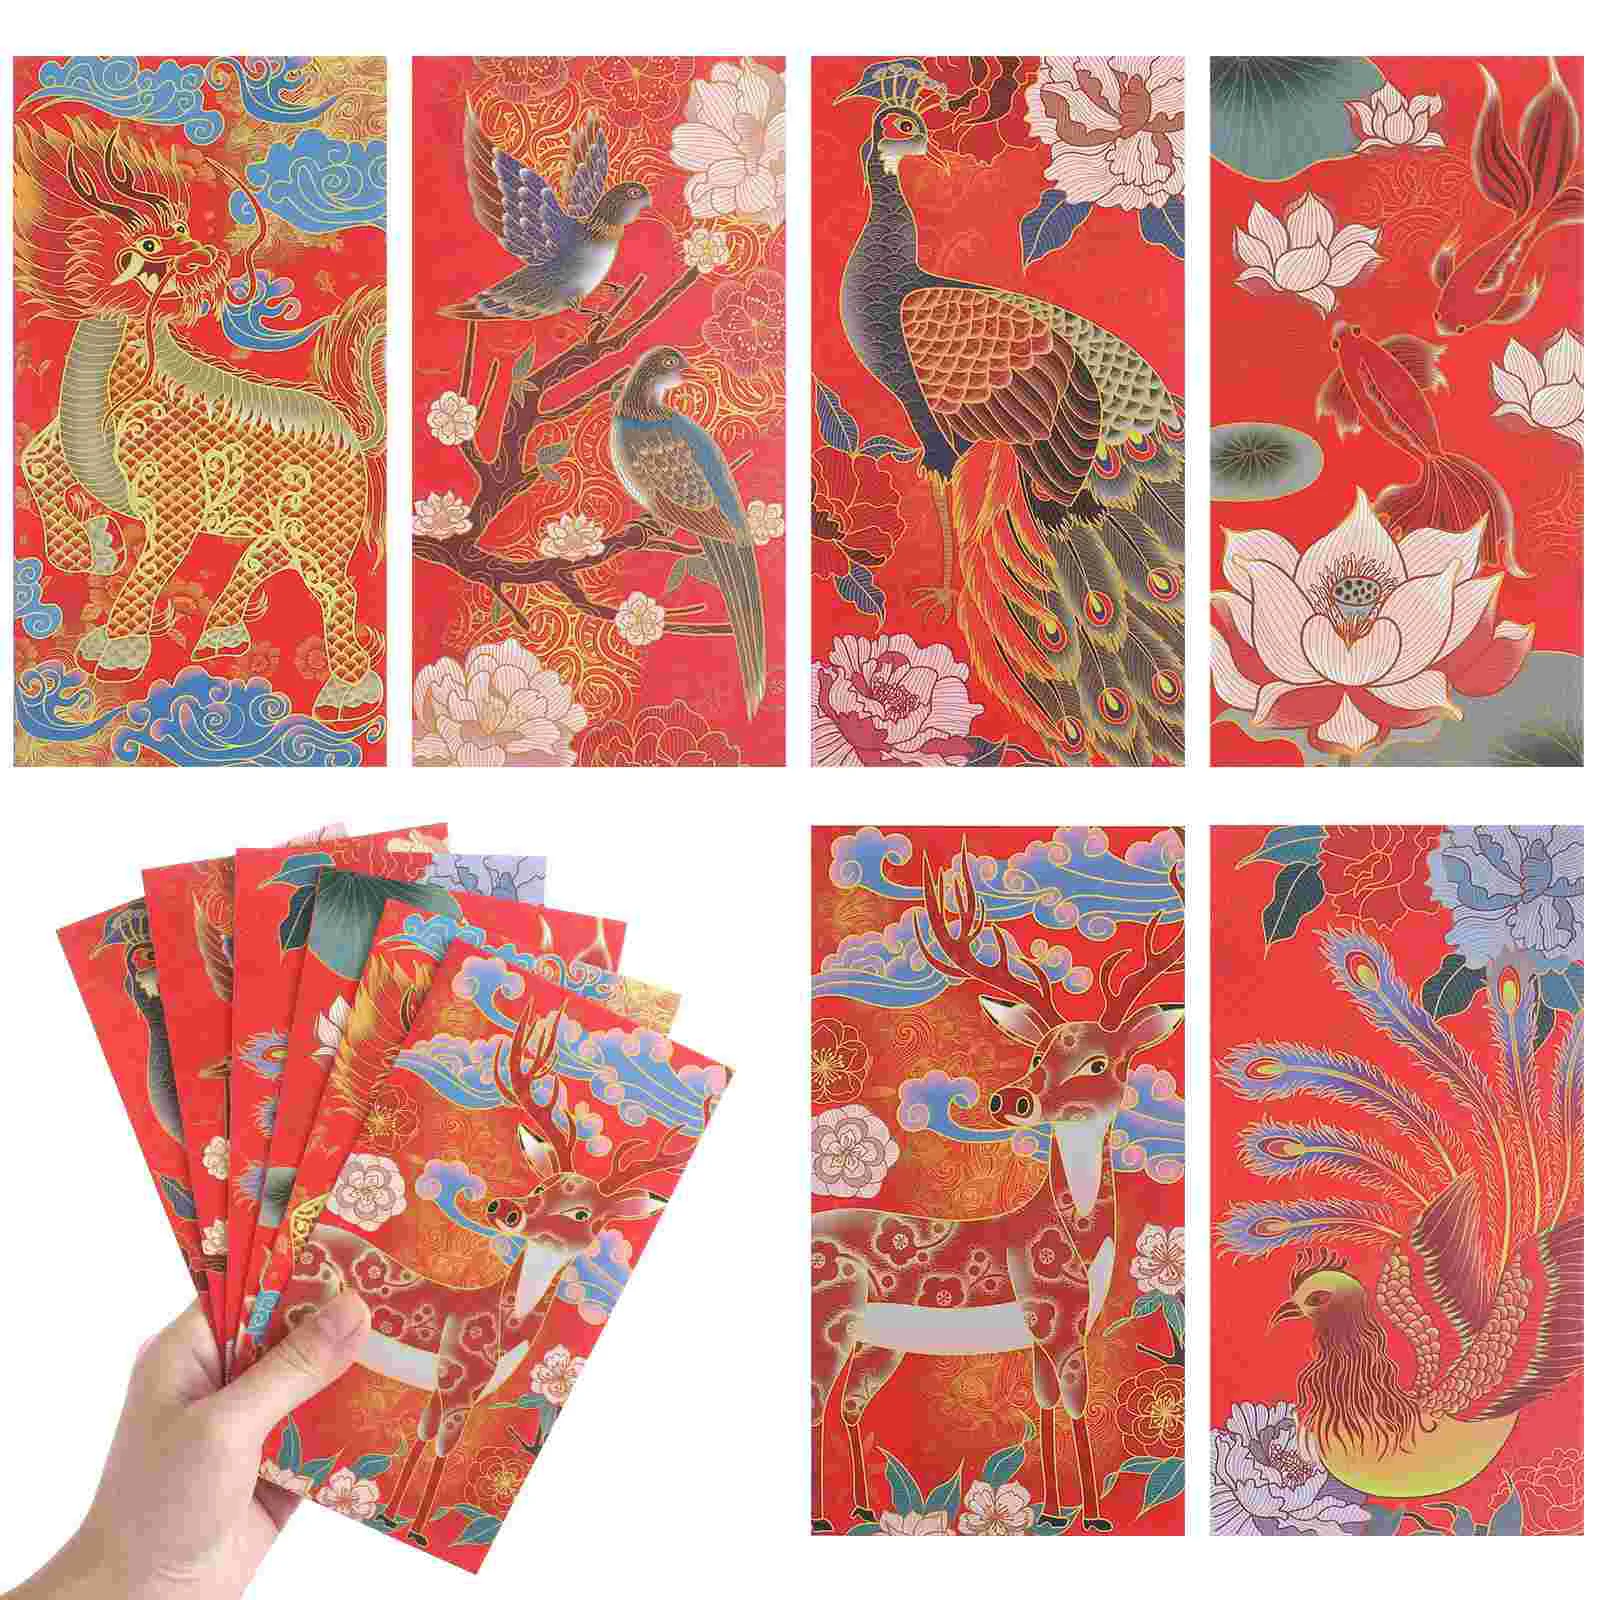 

Символ дня рождения тигра, праздник весны, яркие красные конверты, новые карманы, китайские украшения 2022